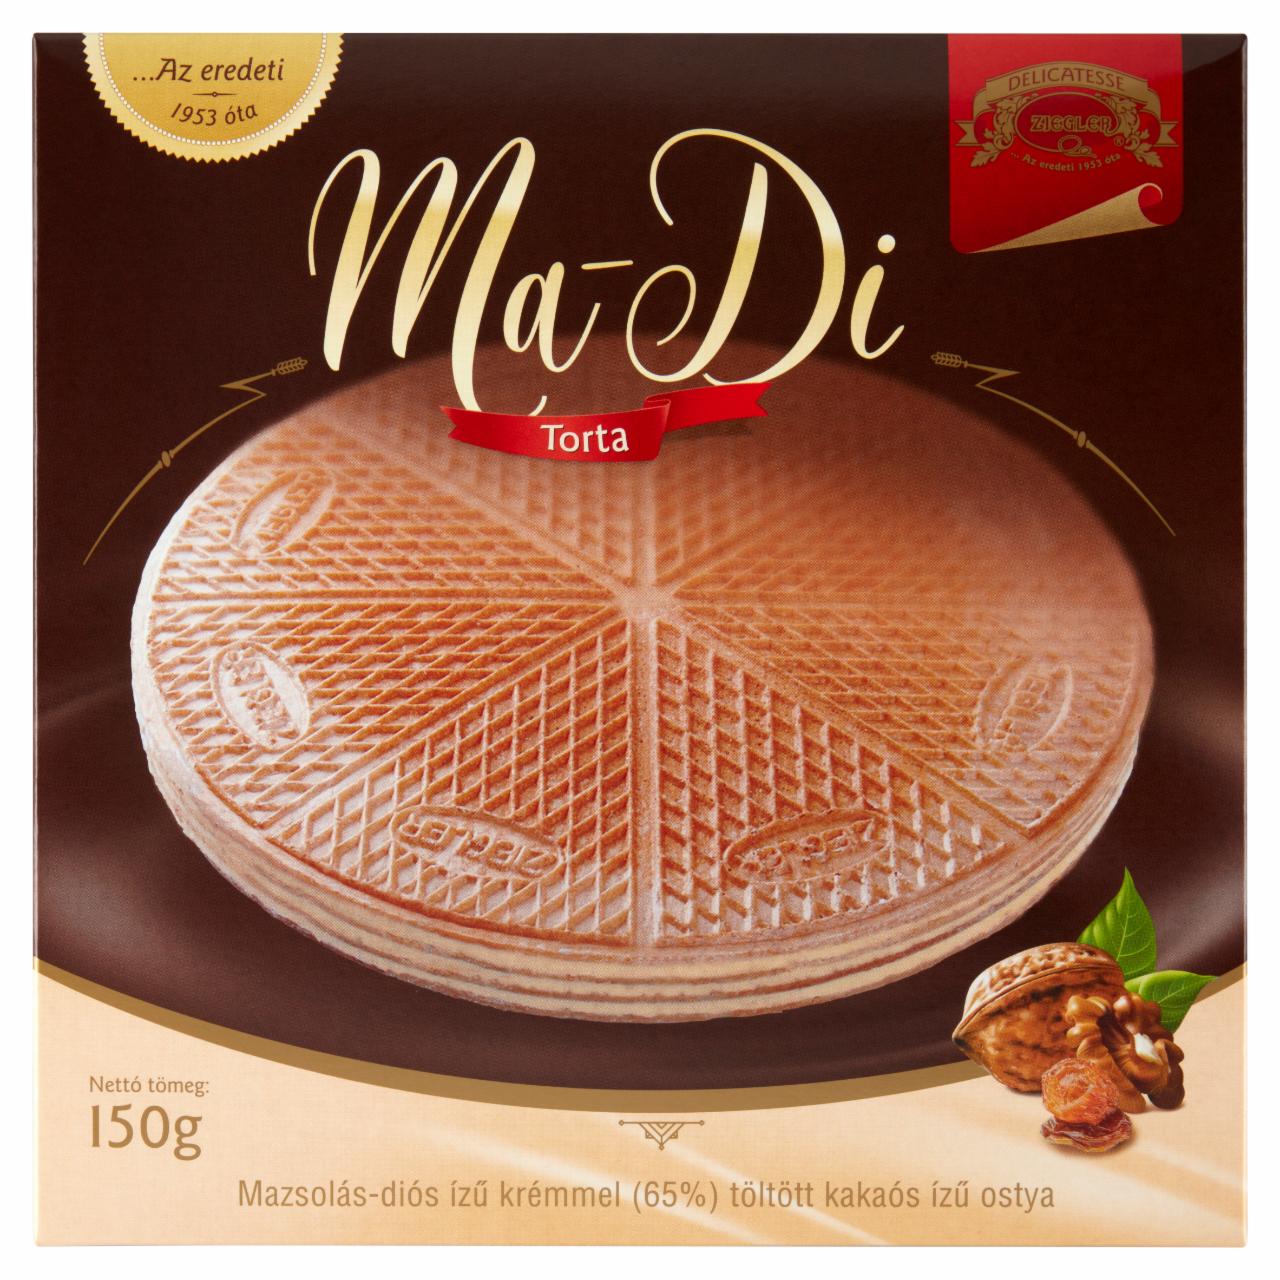 Képek - Ziegler MA-DI Torta mazsolás-diós ízű krémmel töltött kakaós ízű ostya 150 g